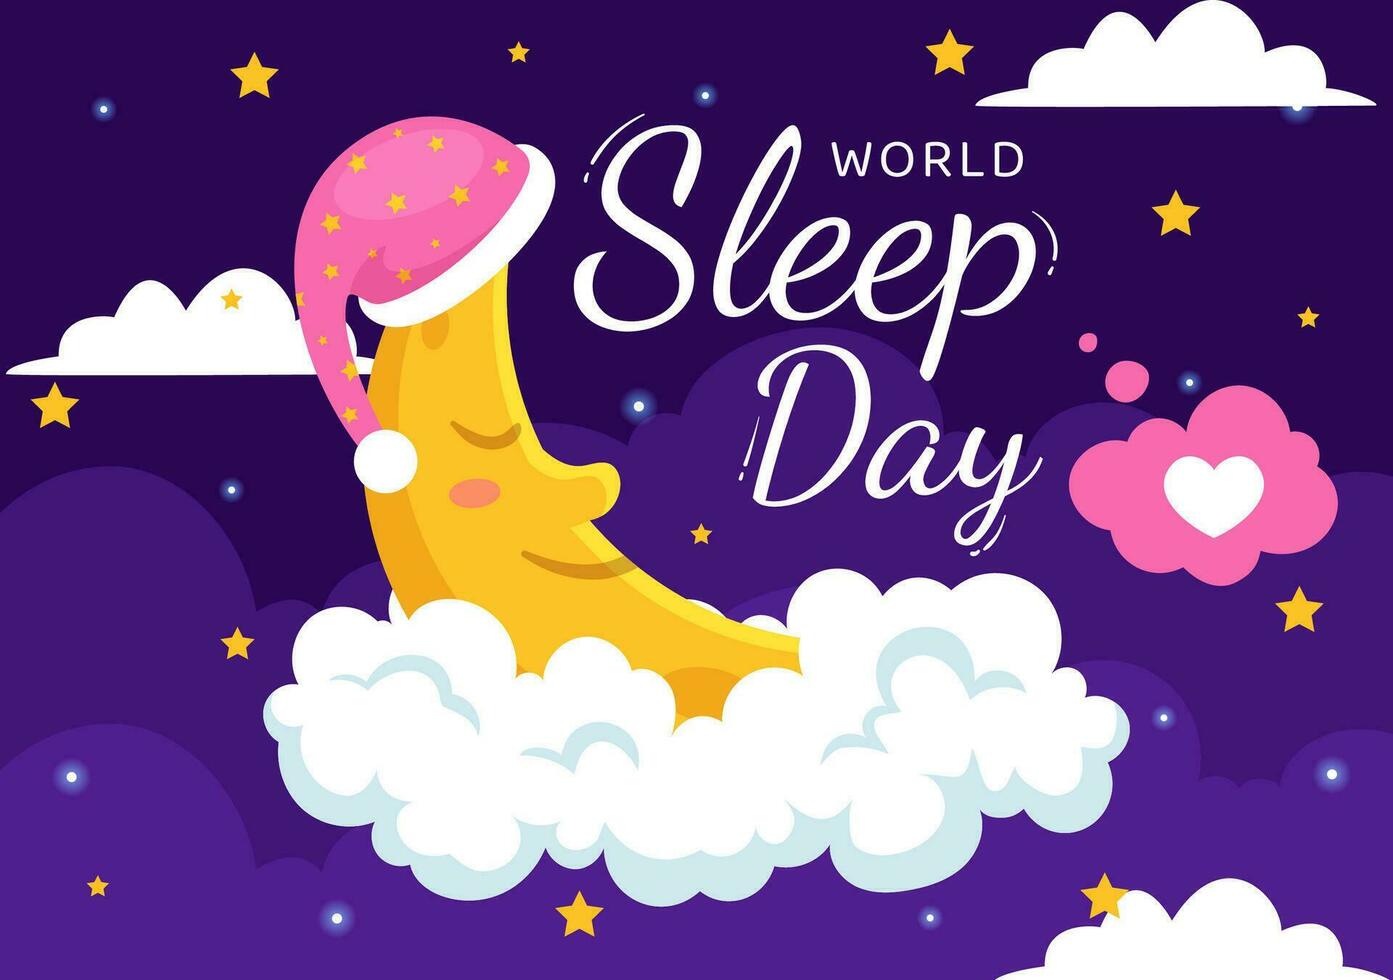 mondo dormire giorno vettore illustrazione su marzo 17 con persone dormendo, nuvole, pianeta terra e il Luna nel cielo sfondi piatto cartone animato design